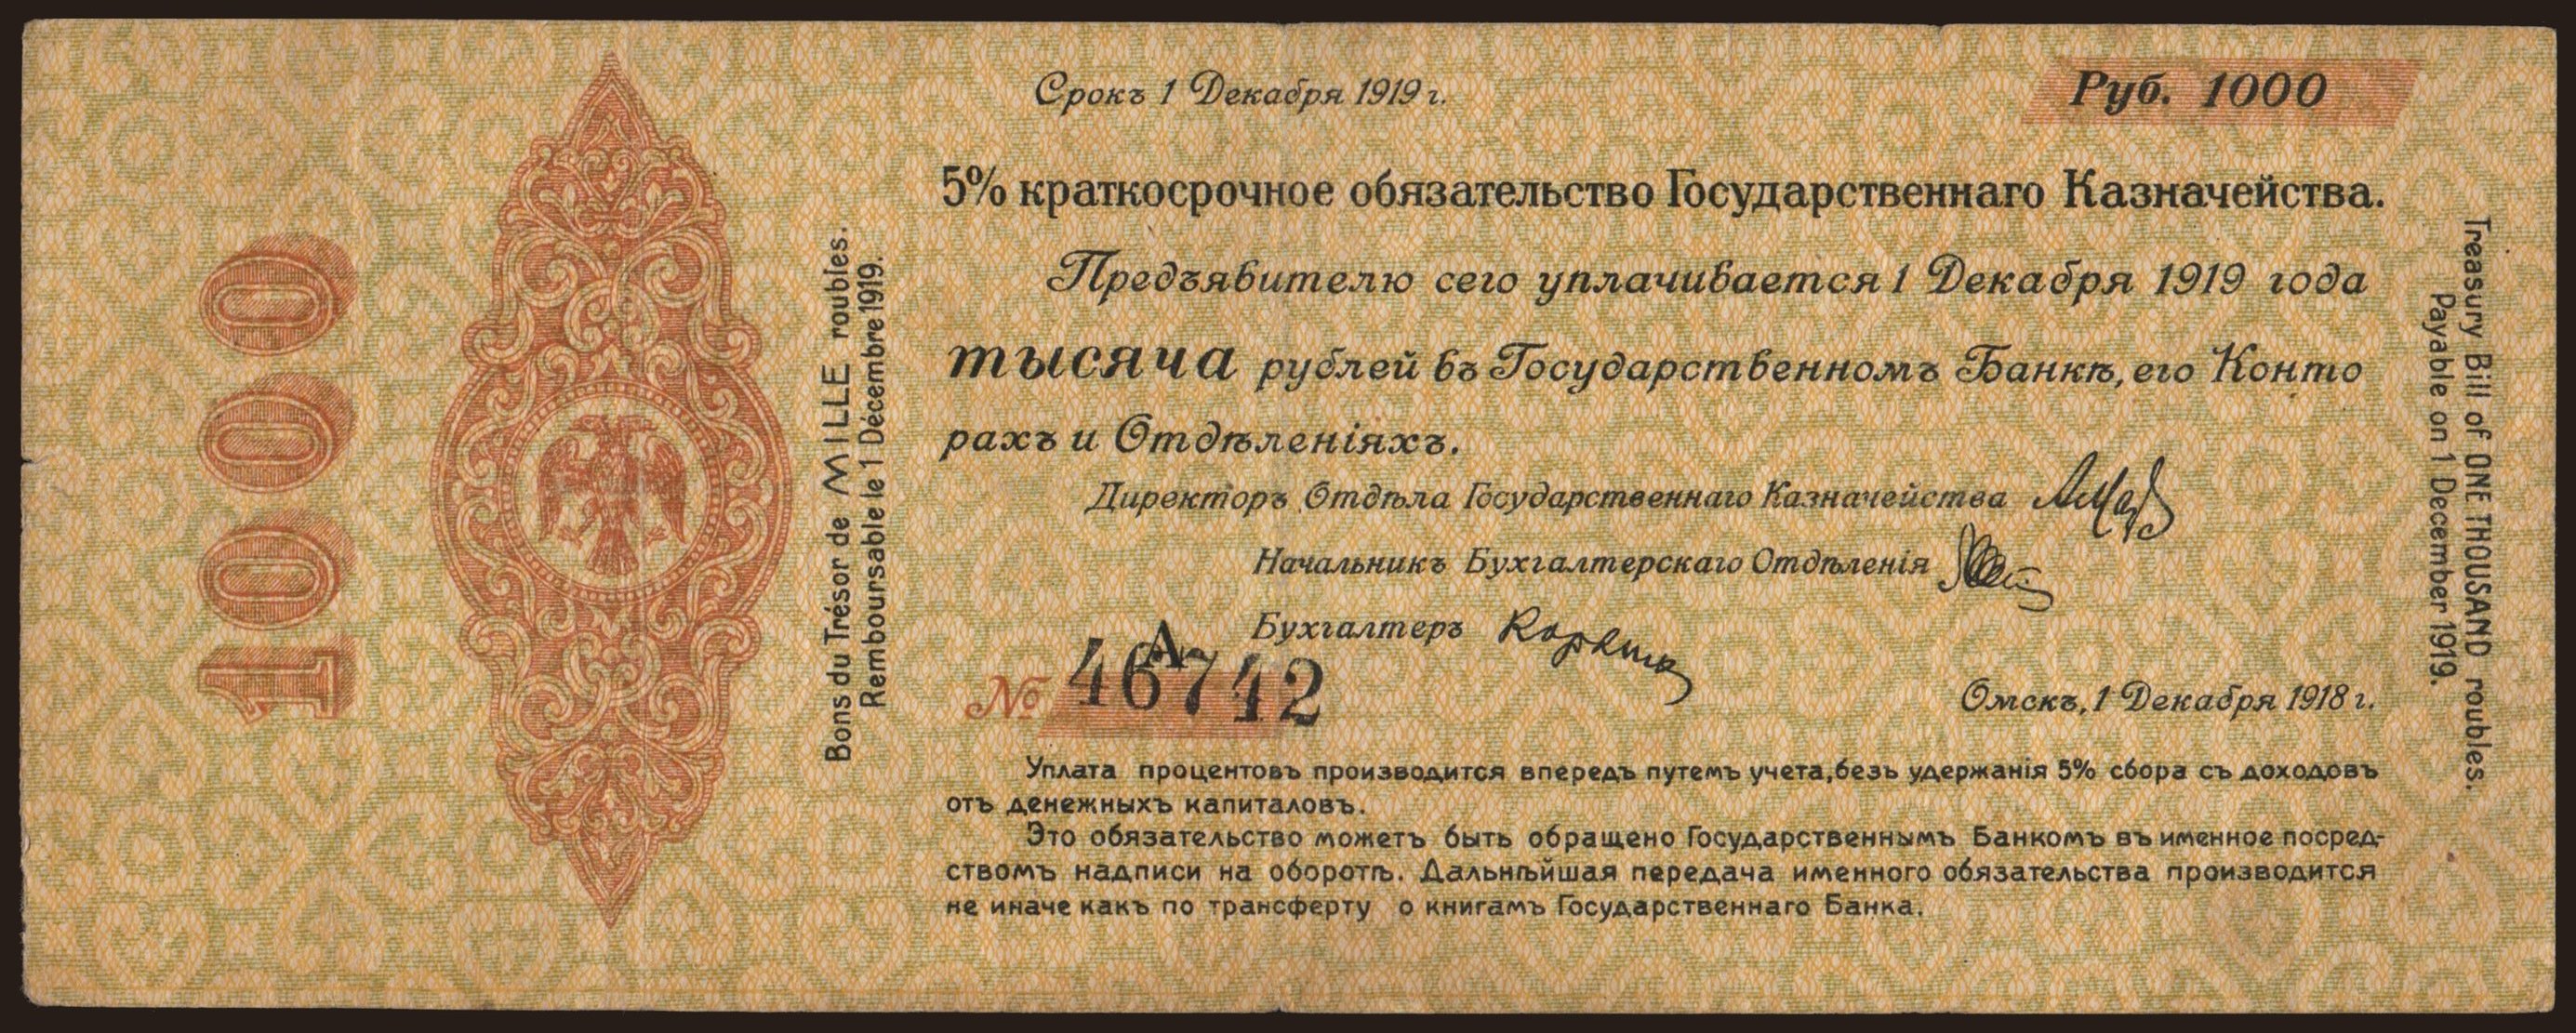 Siberia, 1000 rubel, 1918